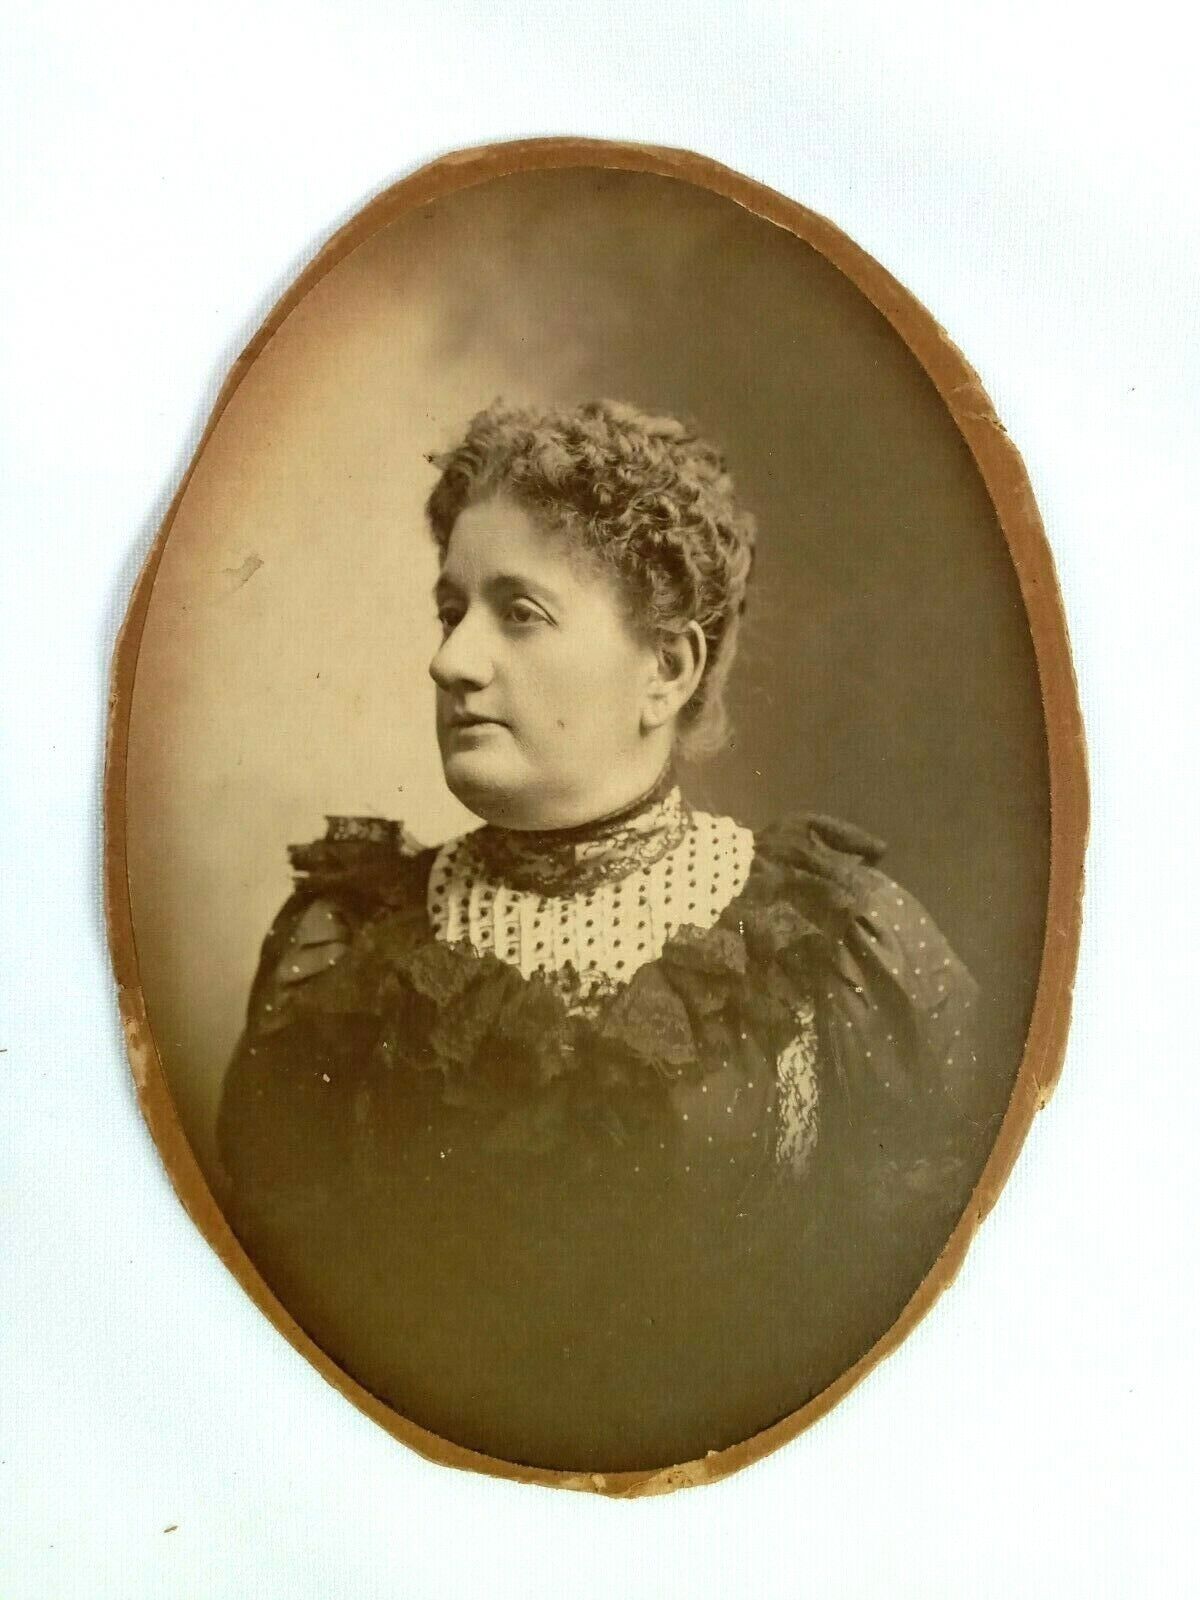 Victorian Woman Portrait - Cabinet Card Vintage Photo